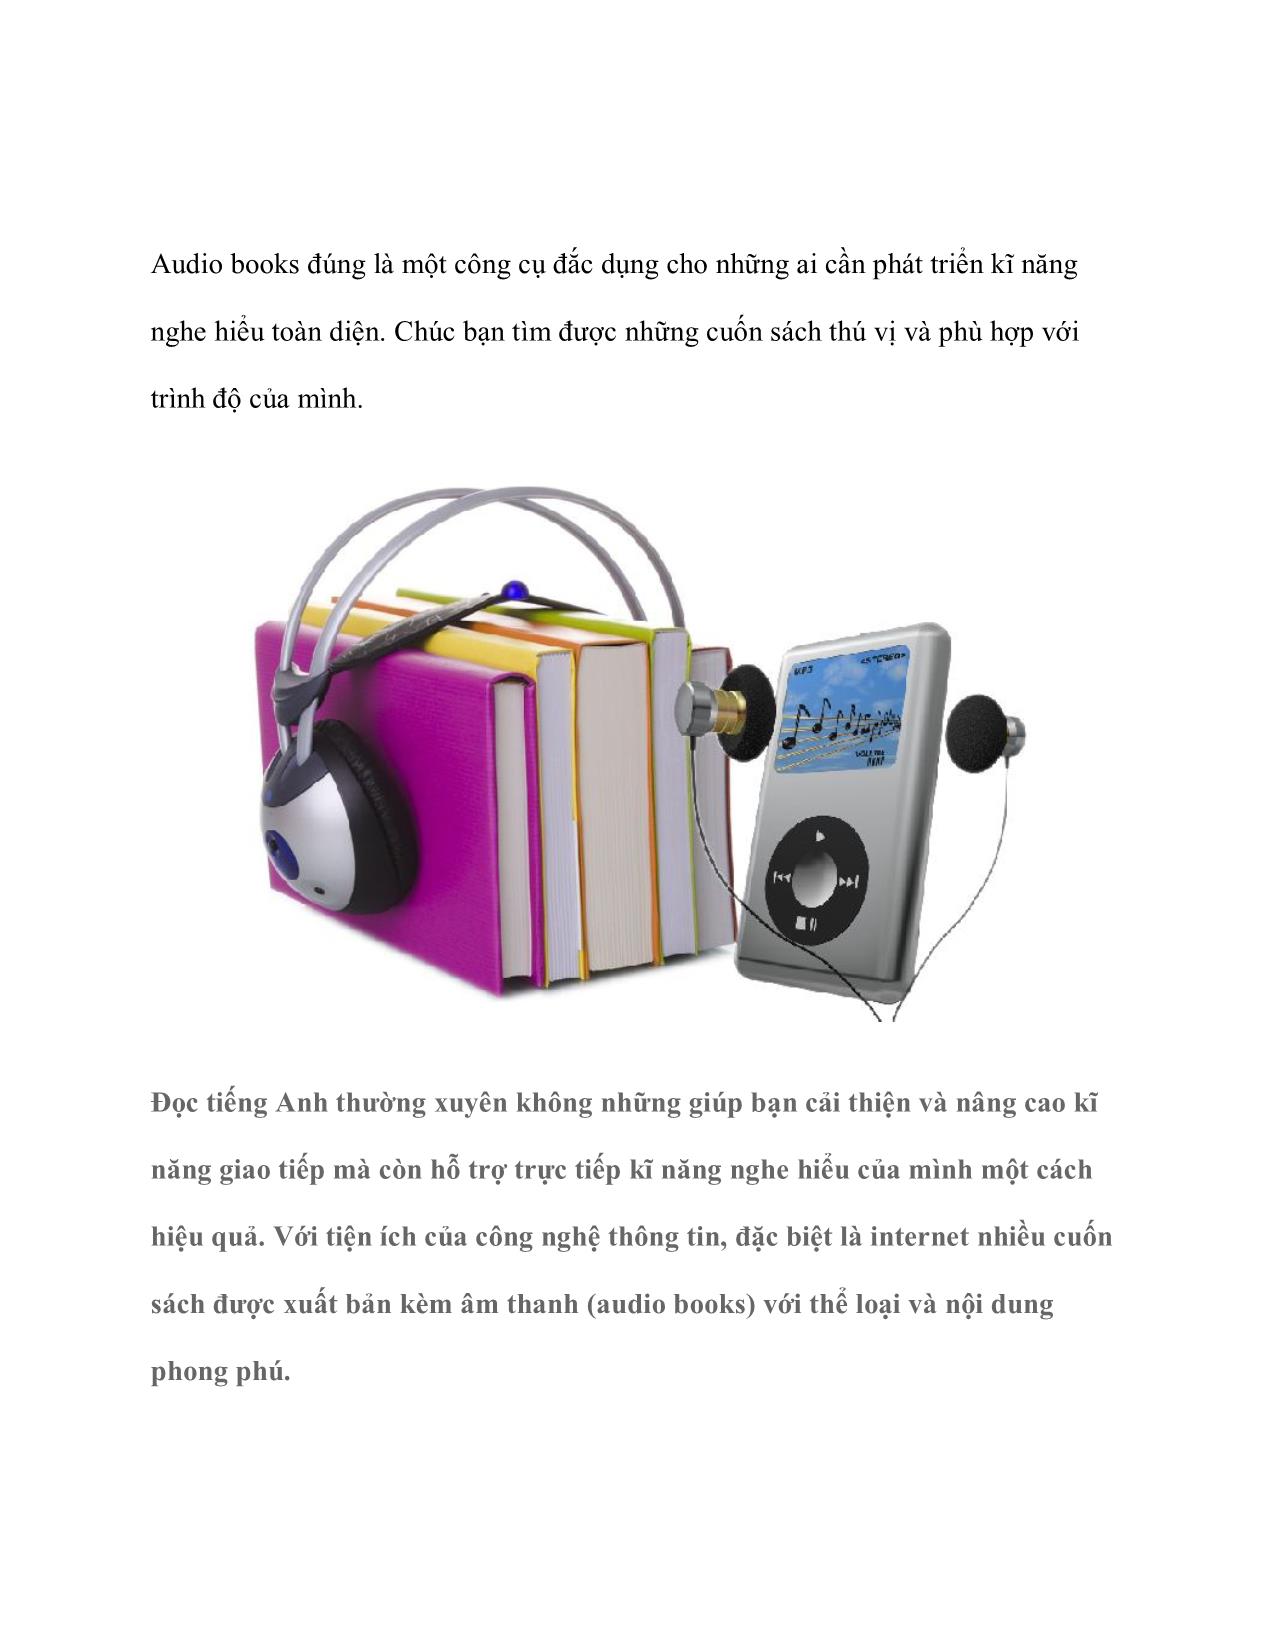 Phát triển kỹ năng nghe hiểu nhờ “audio books” trang 2